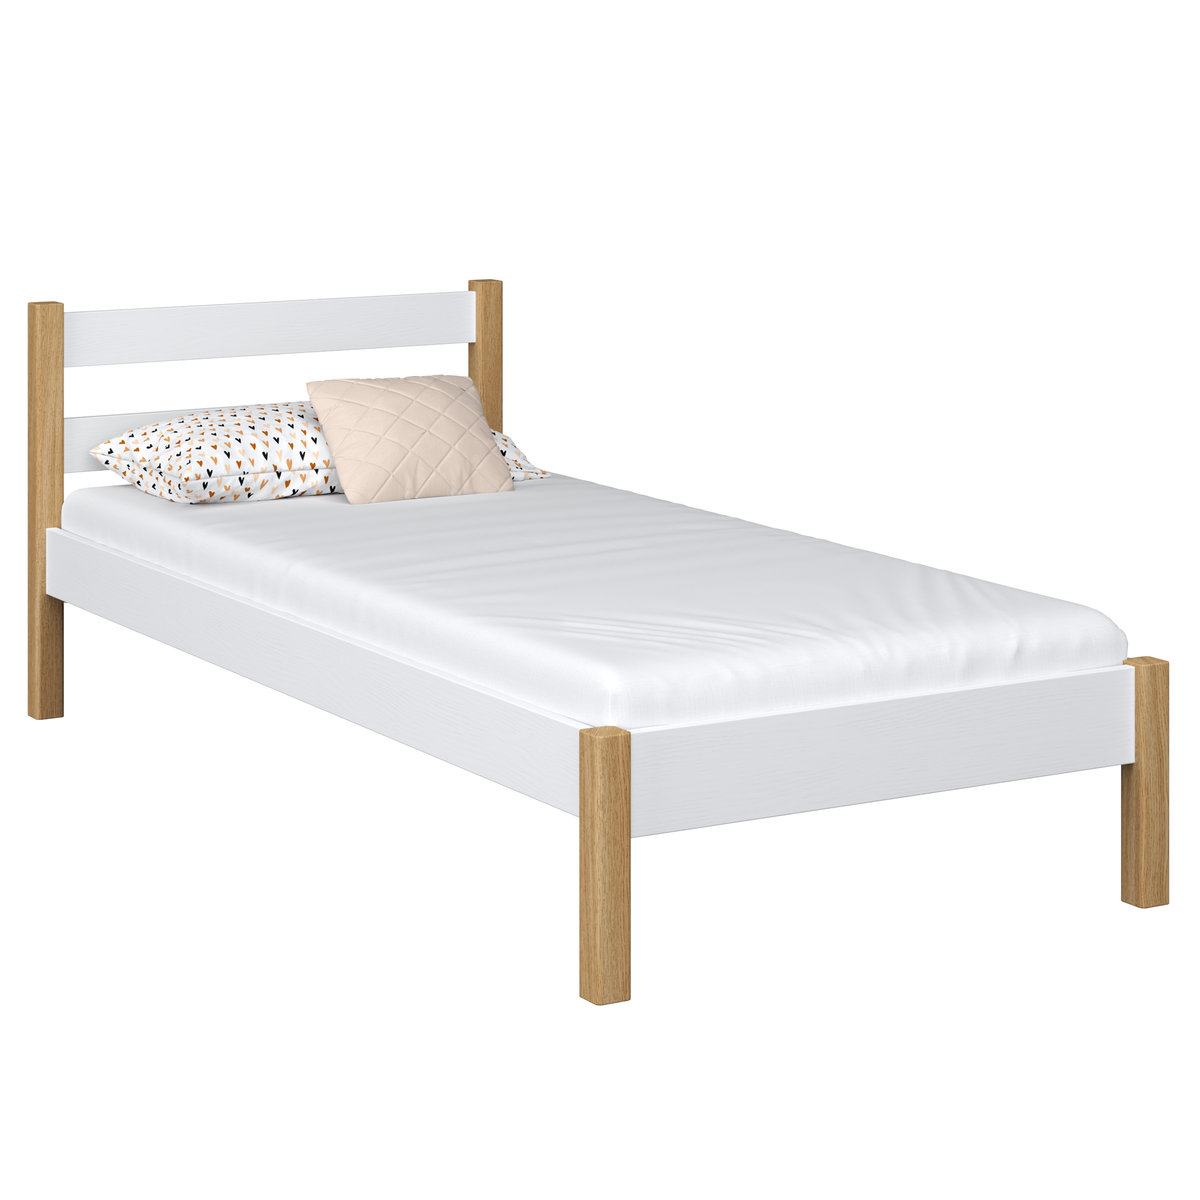 Drewniane łóżko pojedyncze N01 biało dębowe 80x180